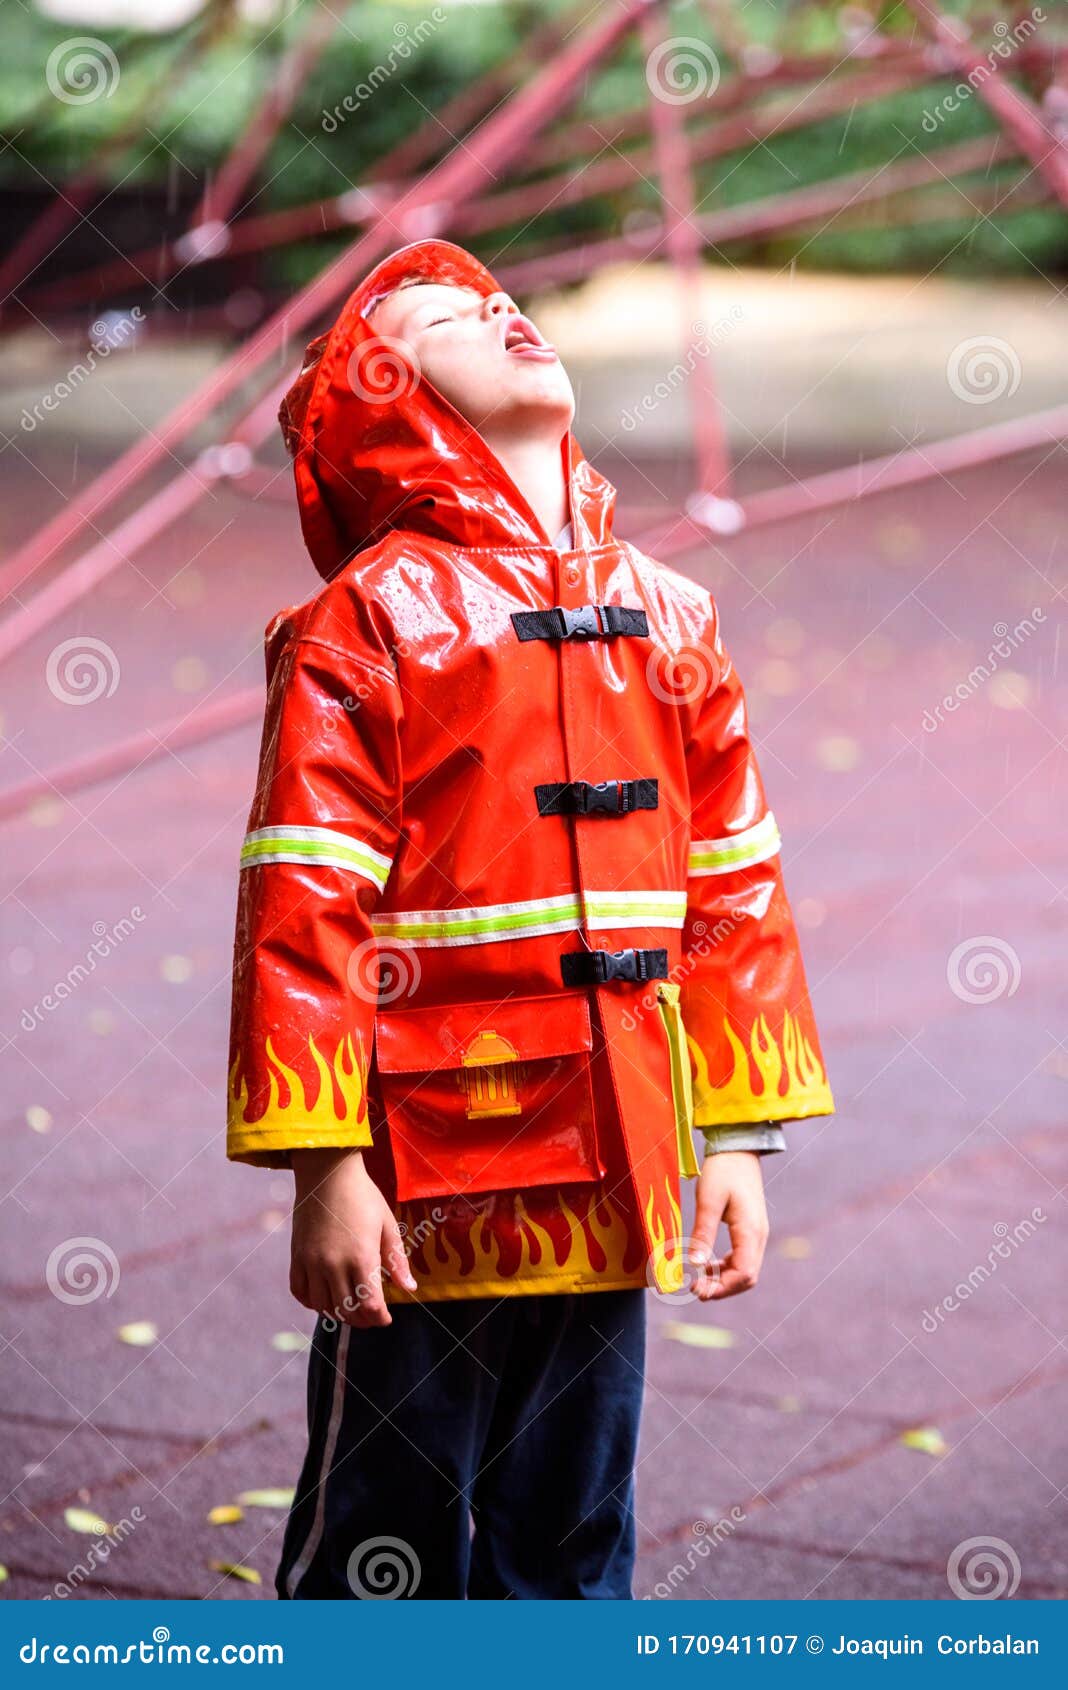 omitir sobrino Oficiales Un Niño Gracioso Vestido Con Un Bombero De Impermeable Rojo Juega En Un  Parque En Un Día Lluvioso Imagen de archivo - Imagen de sucio, exterior:  170941107